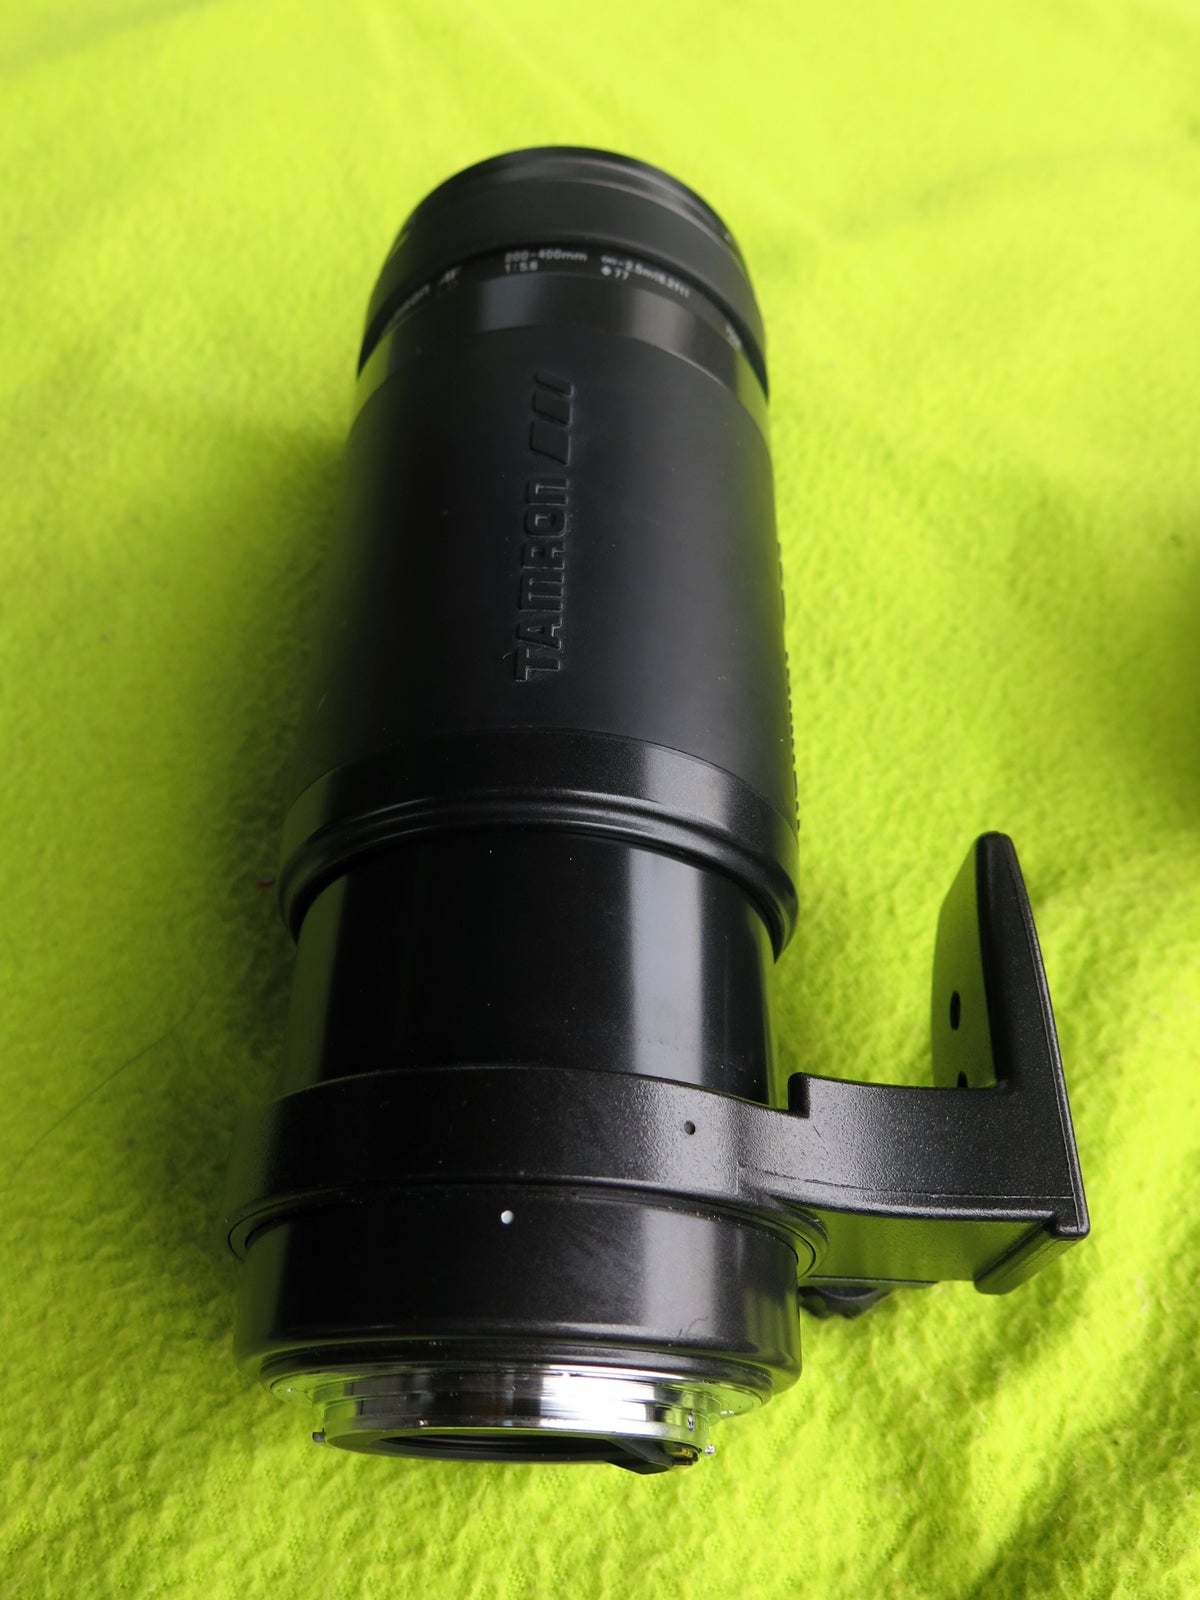 Super-Tele-zoom., Canon, 200 - 400 mm